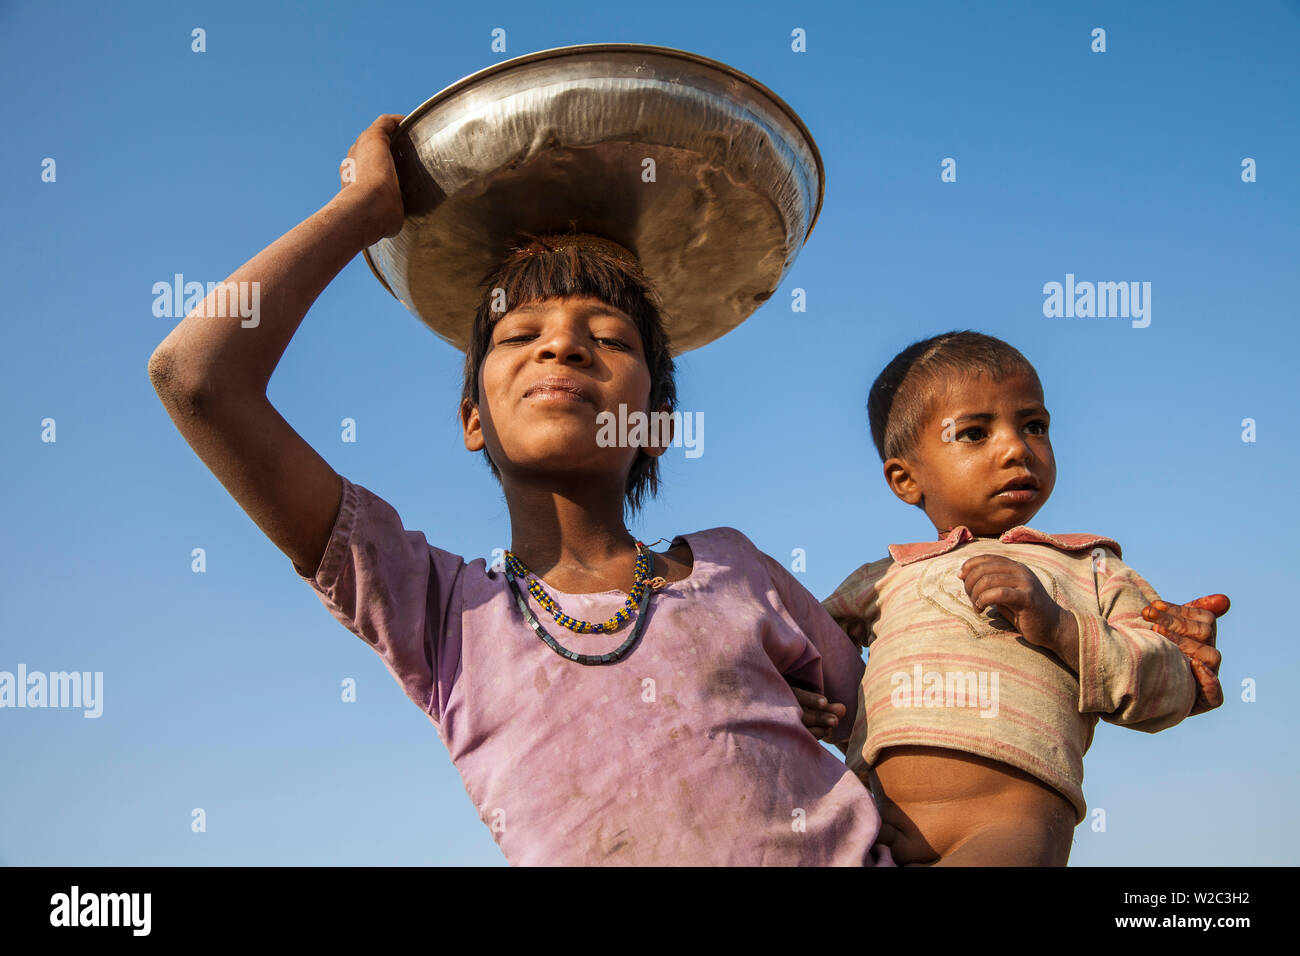 L'Inde, Rajasthan, Pushkar, Pushkar Camel Fair, Girl carrying baby chercher de bouse de chameau Banque D'Images